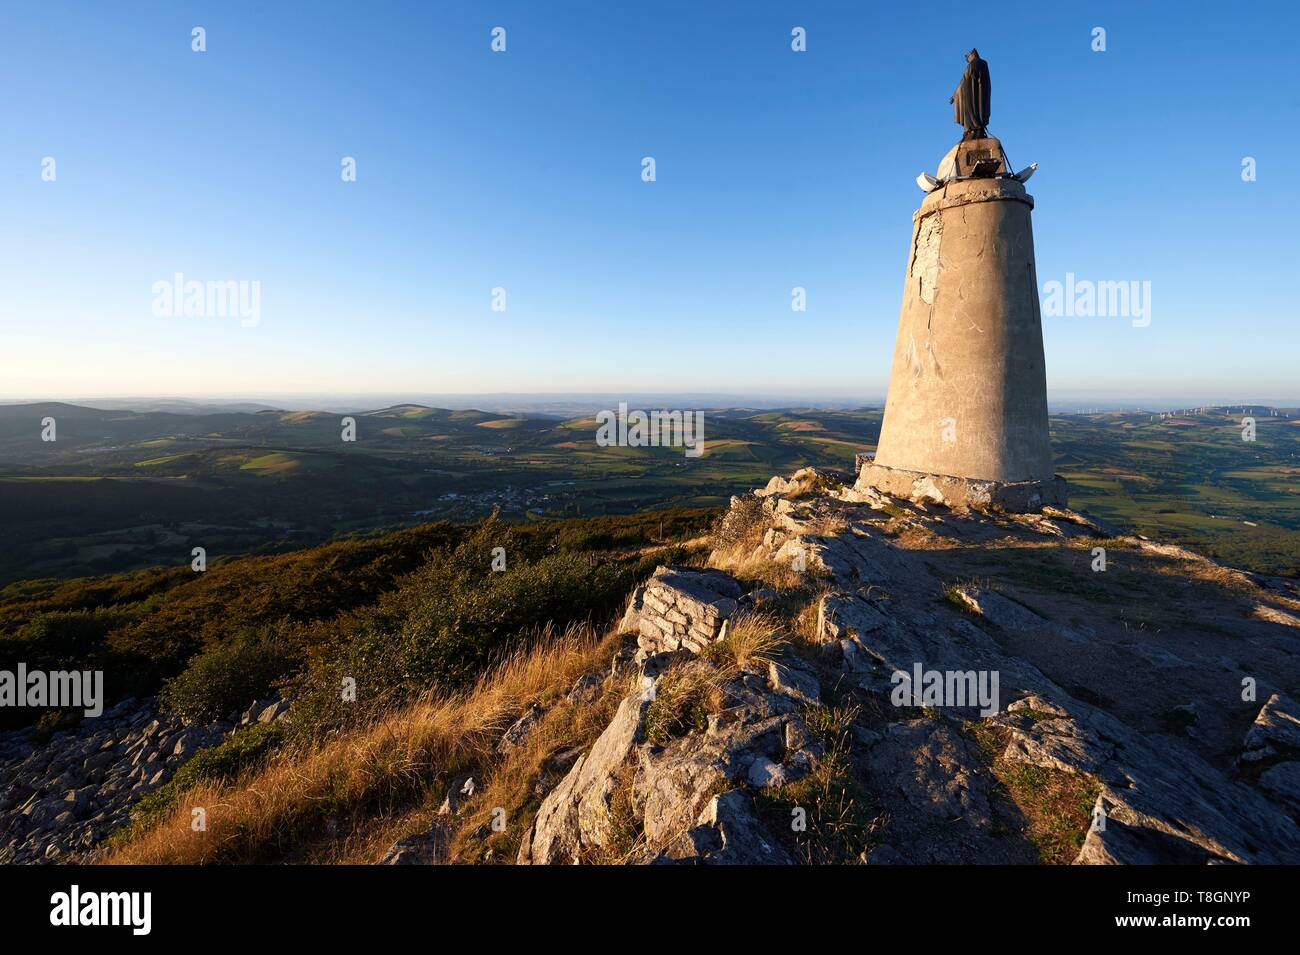 France, Tarn, Lacaune, Monts de Lacaune, Regional Natural Park of Haut Languedoc, roc de Montalet, place of pilgrimage, statue of the Virgin Stock Photo